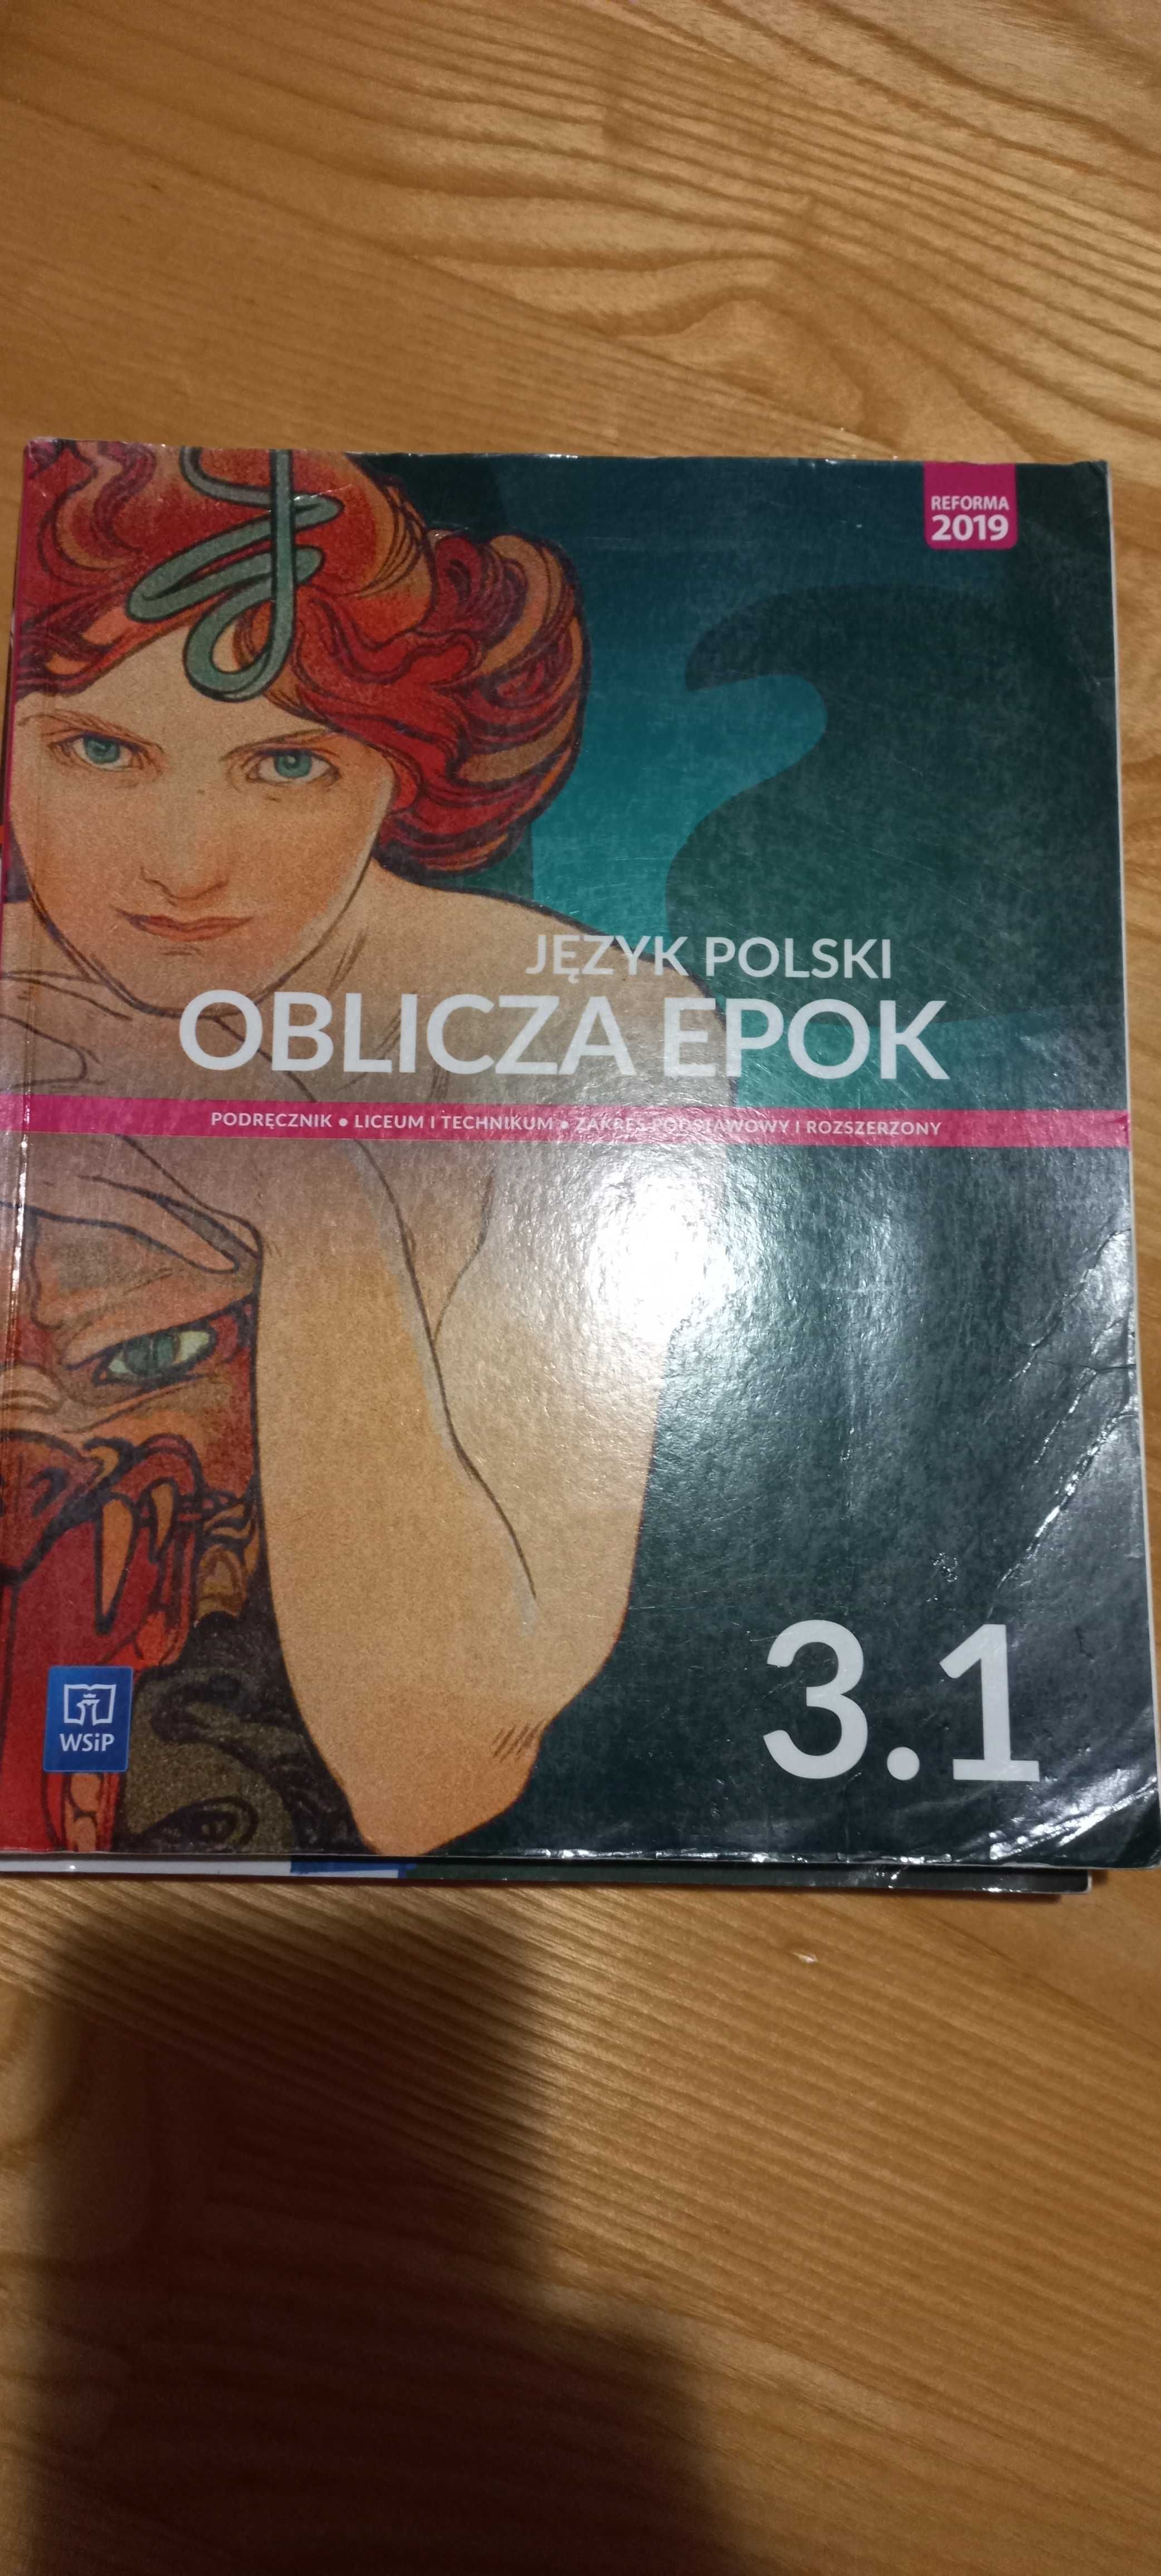 Podręcznik język polski Oblicz epok 3.1